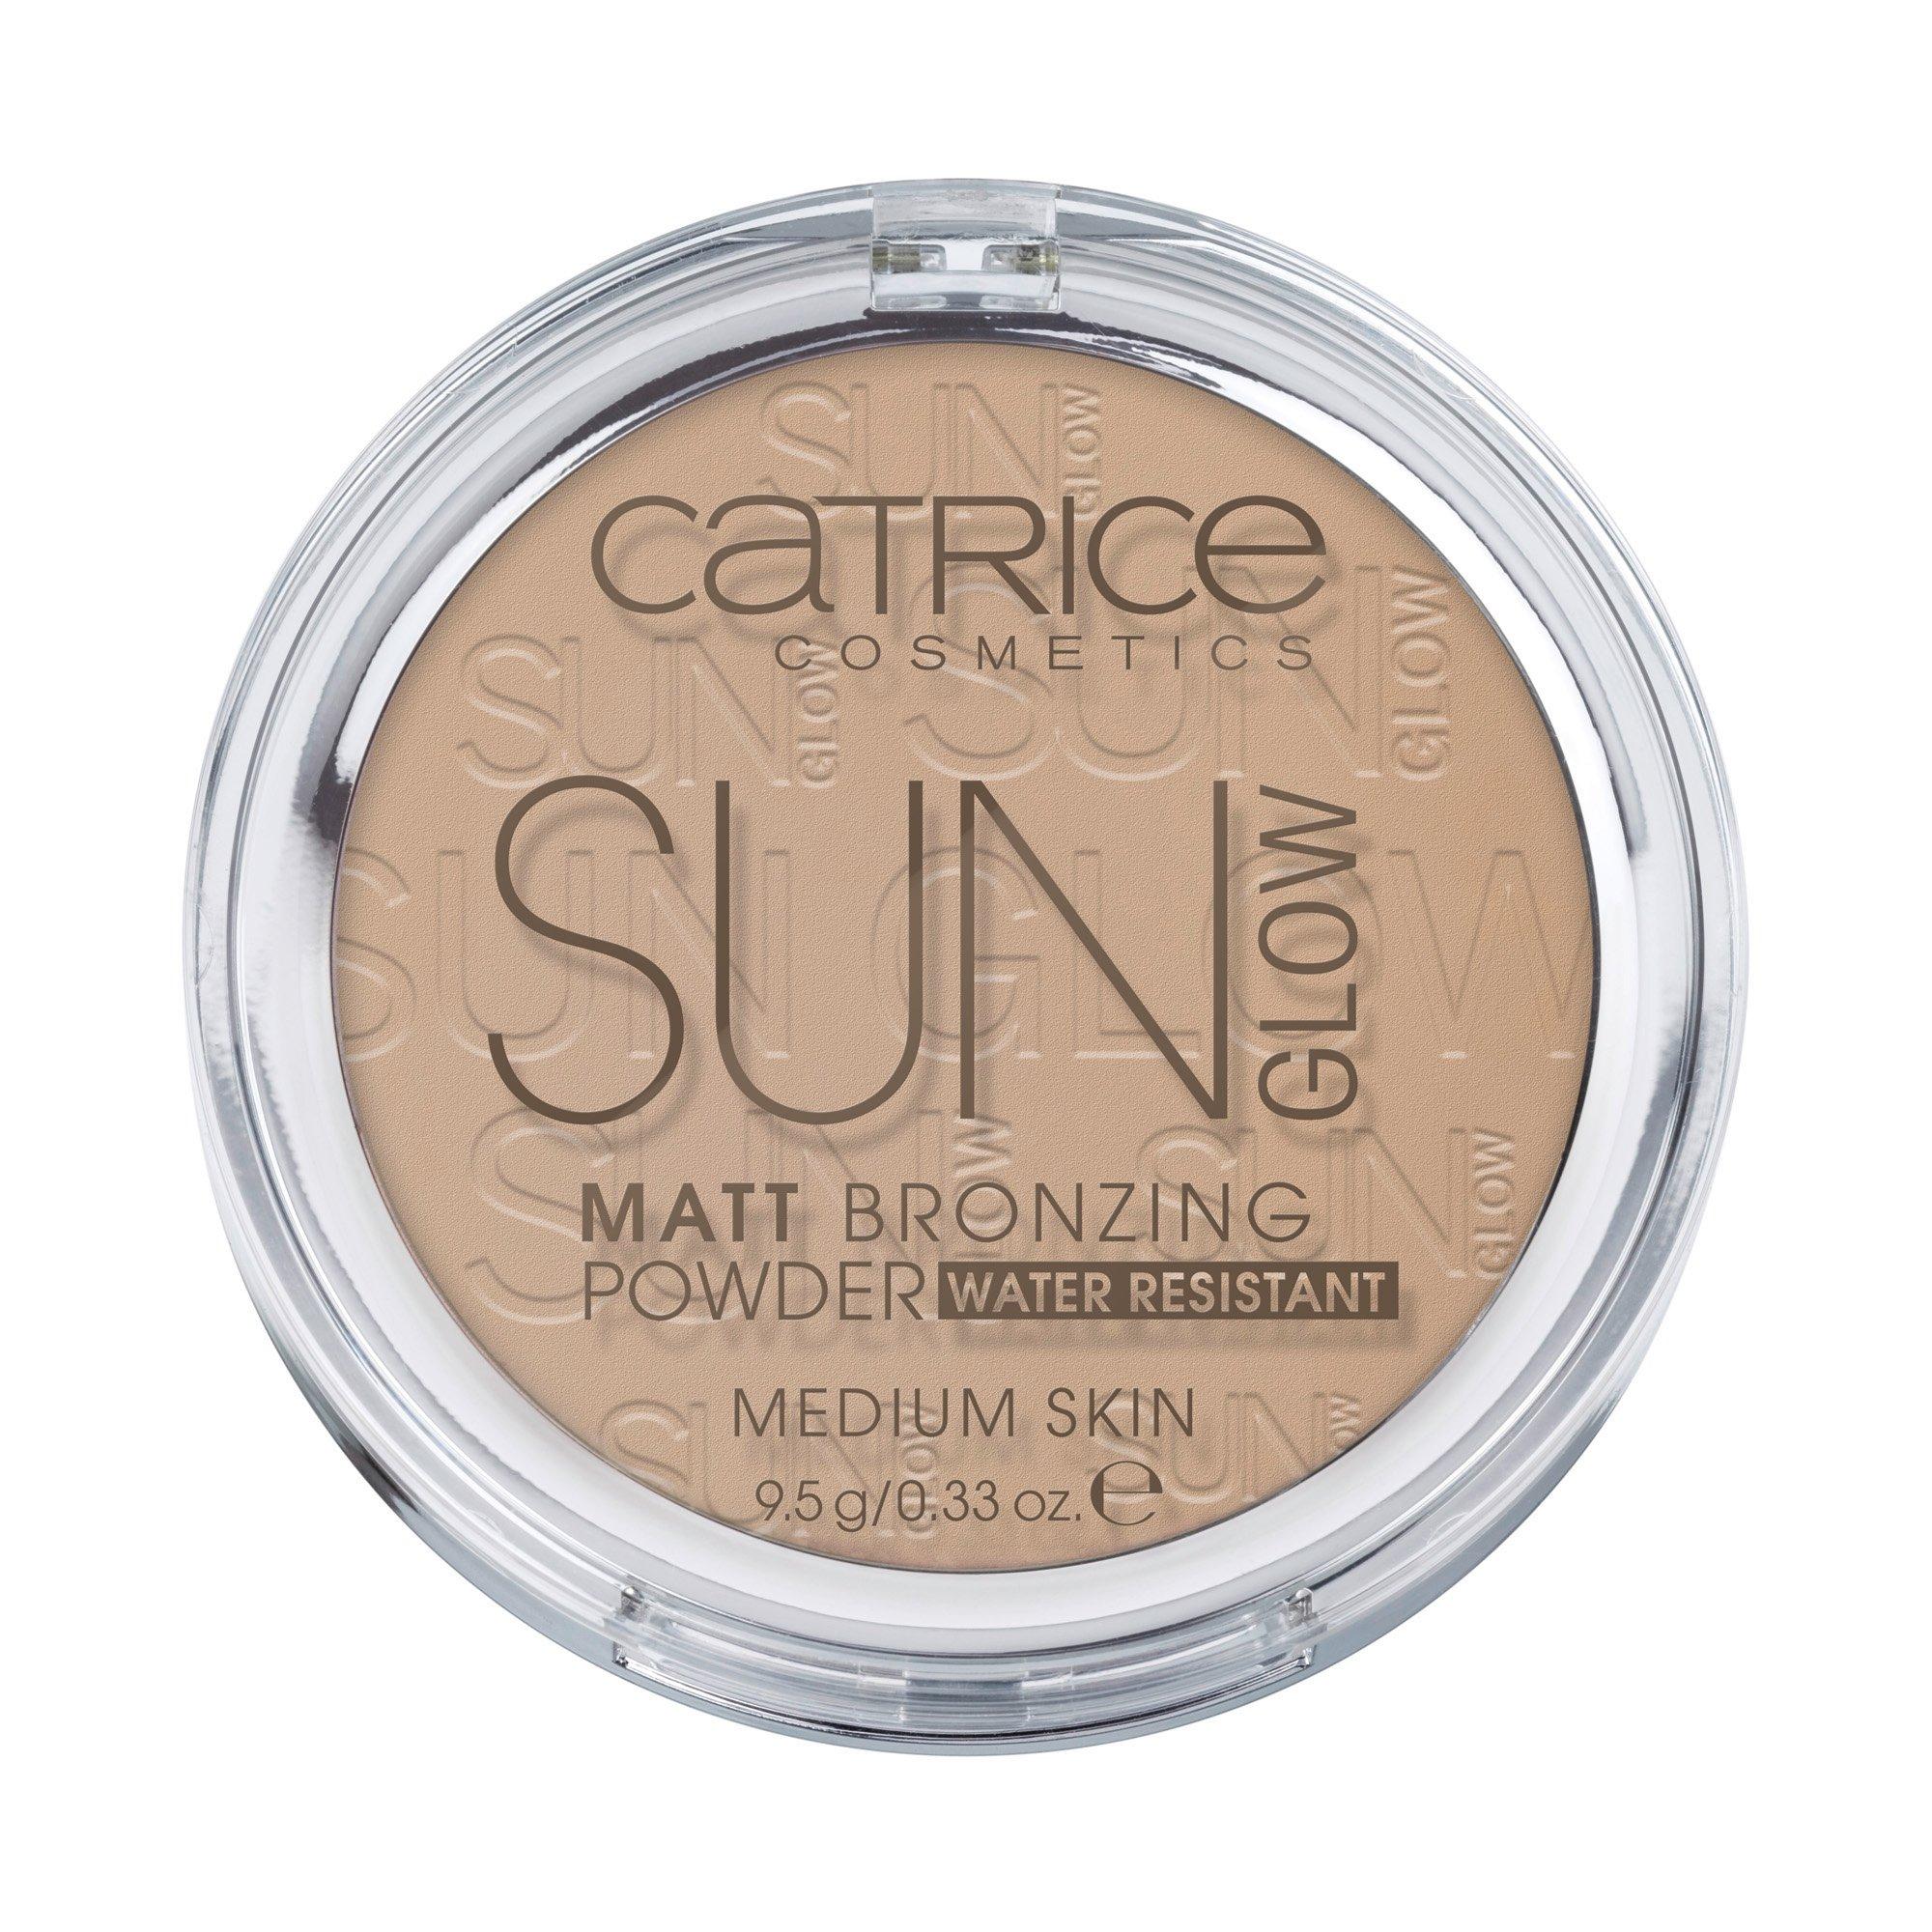 CATRICE  Sun Glow Matt Bronzing Powder 